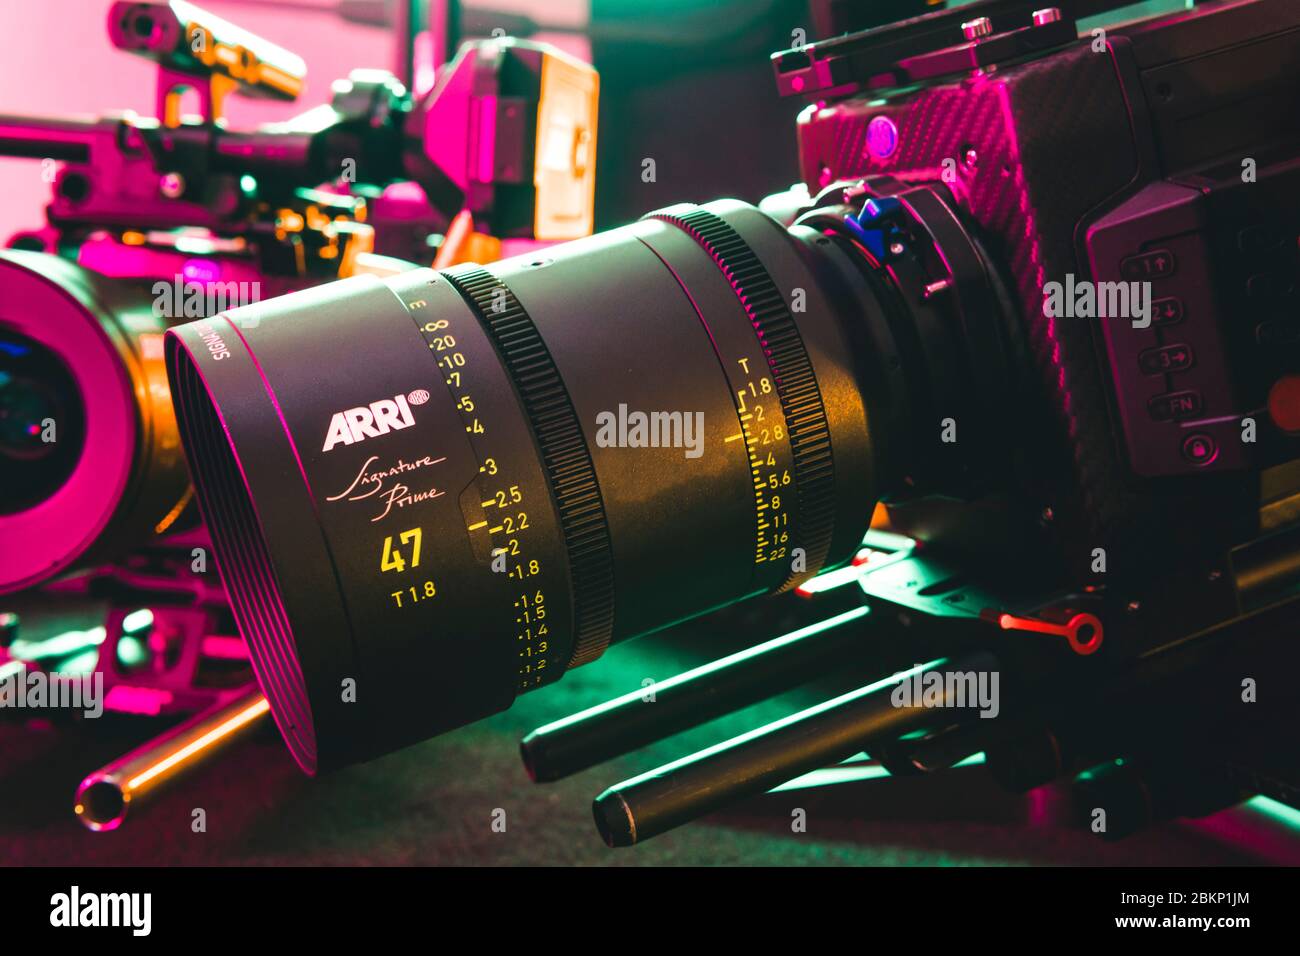 Kiew, Ukraine - 04.17.2020: Studio-Shooting der professionellen Videokamera Arri Alexa mini LF mit Objektiv, Nahaufnahme. Professionelle Ausrüstung für den Kinematographen Stockfoto